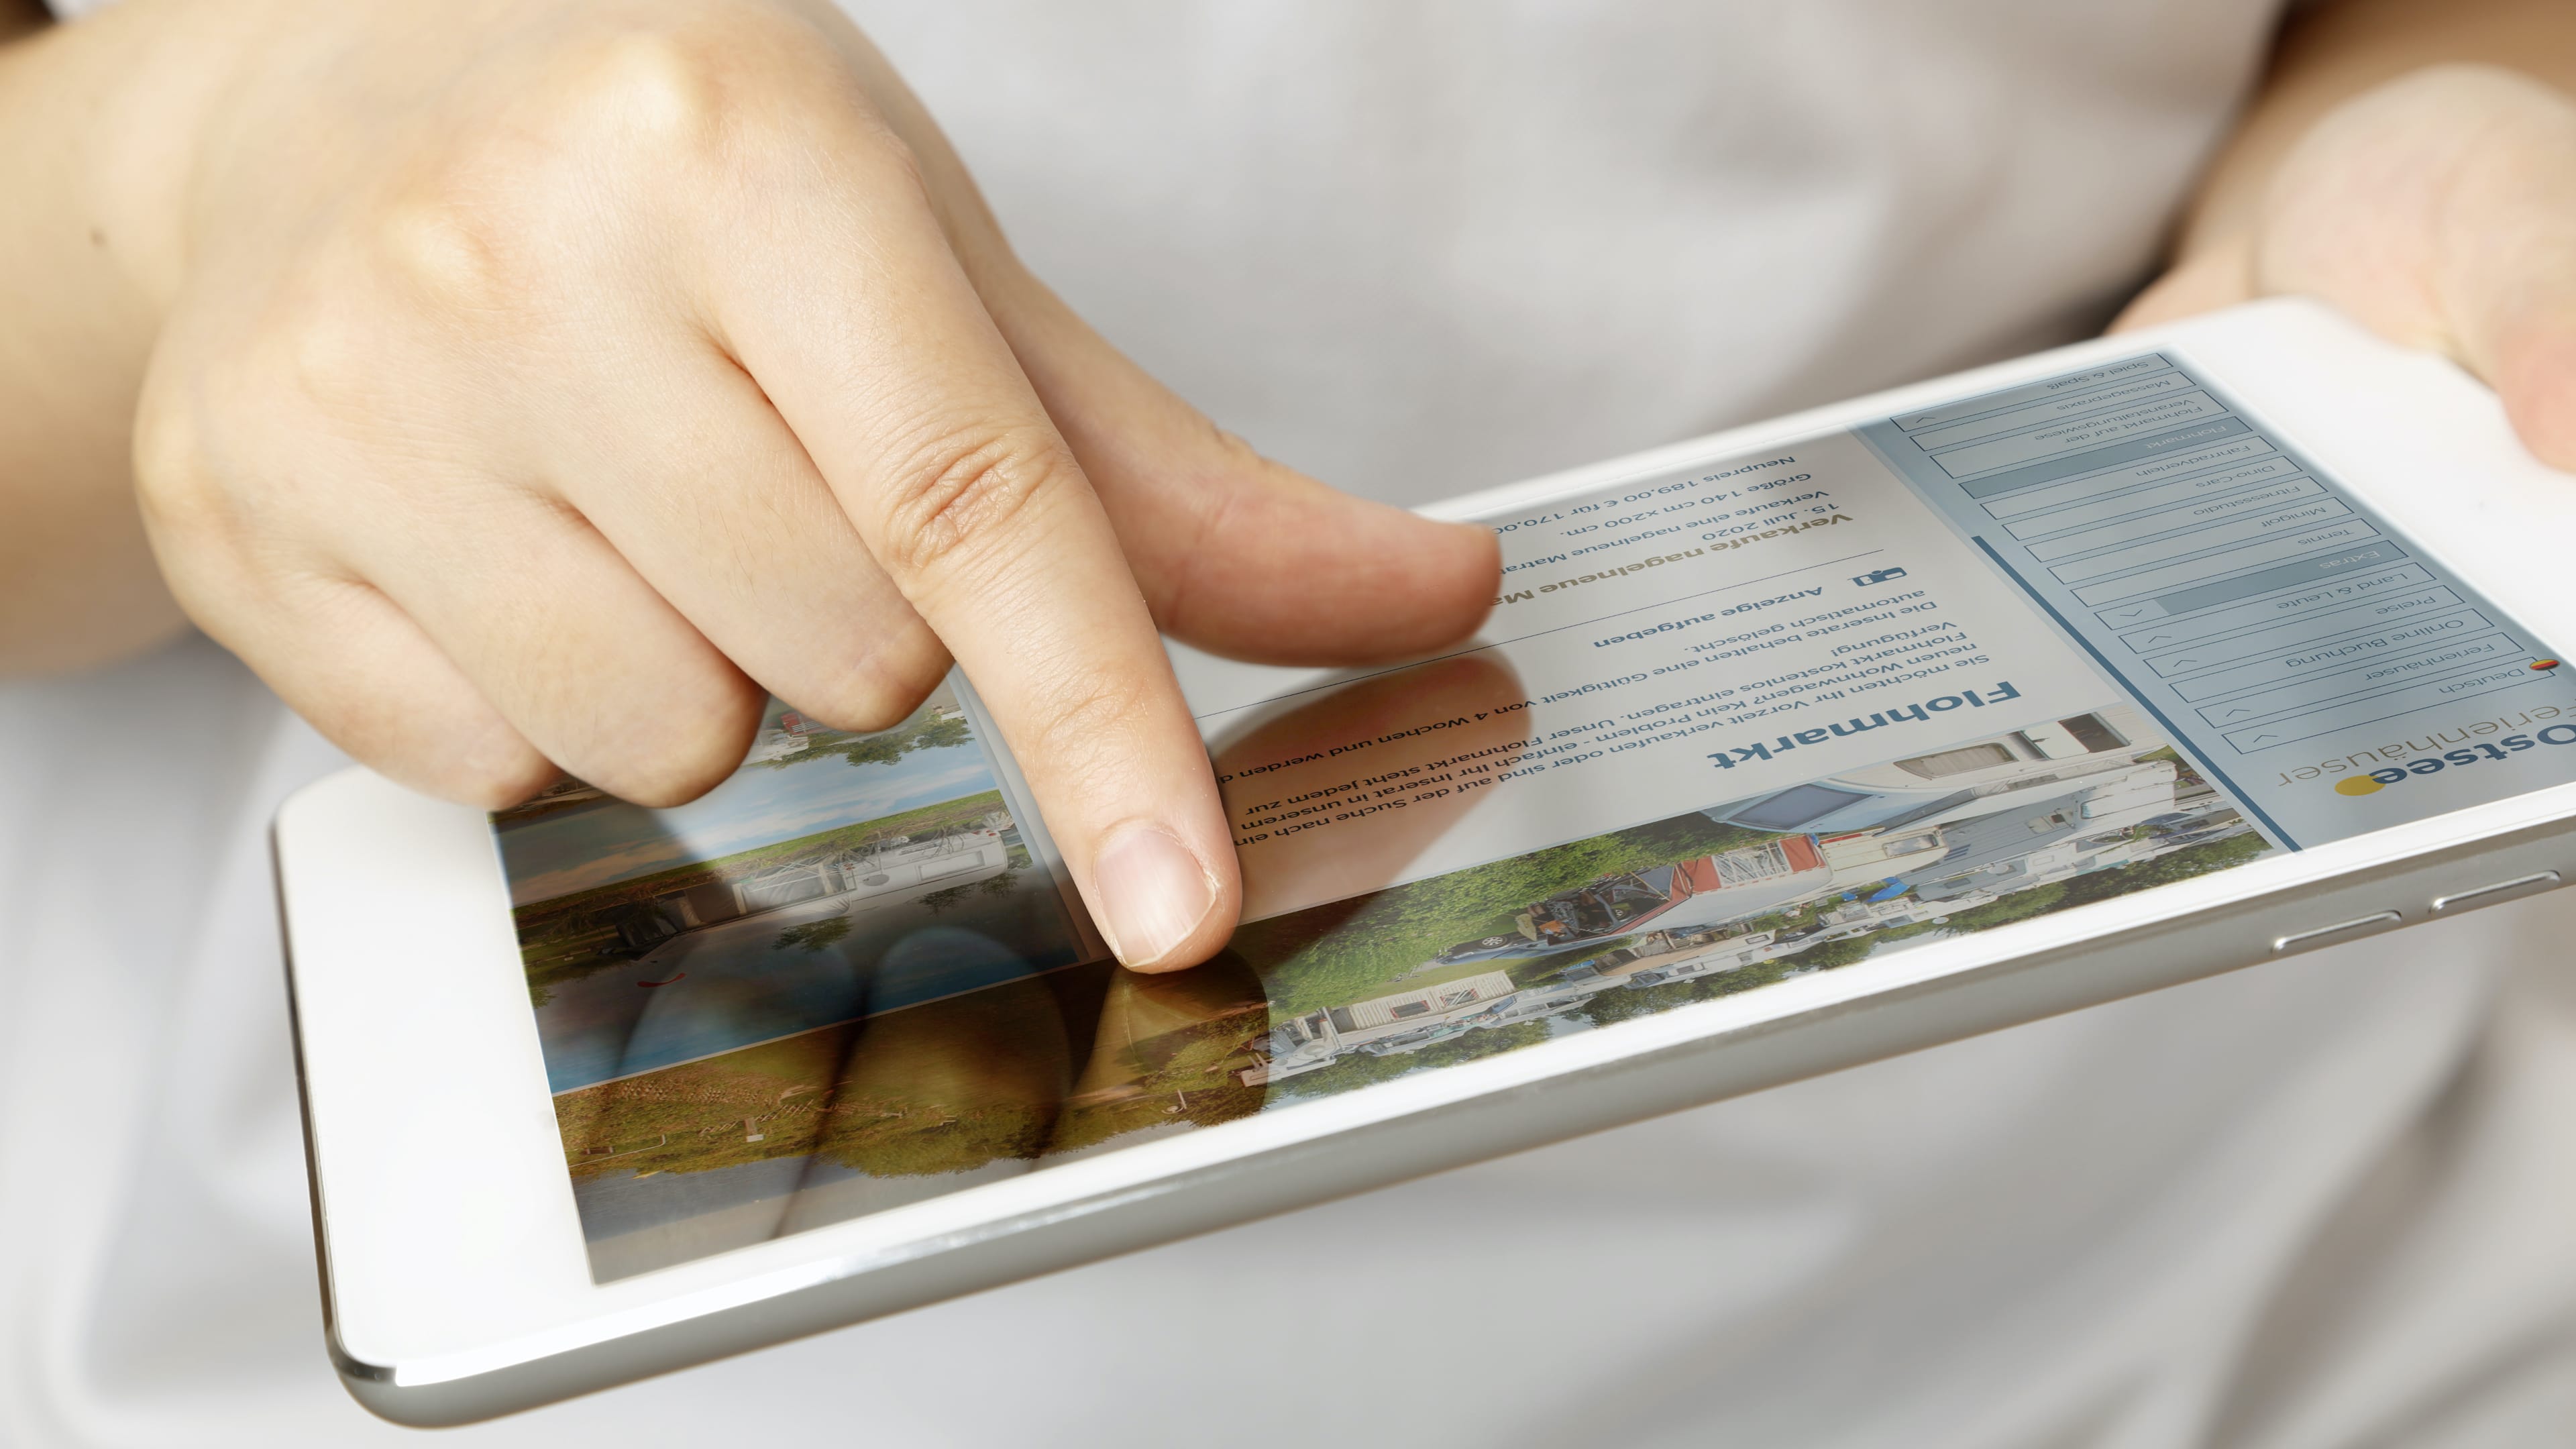 Finger auf Tablet, das die Website der Ostsee Ferienhäuser zeigt